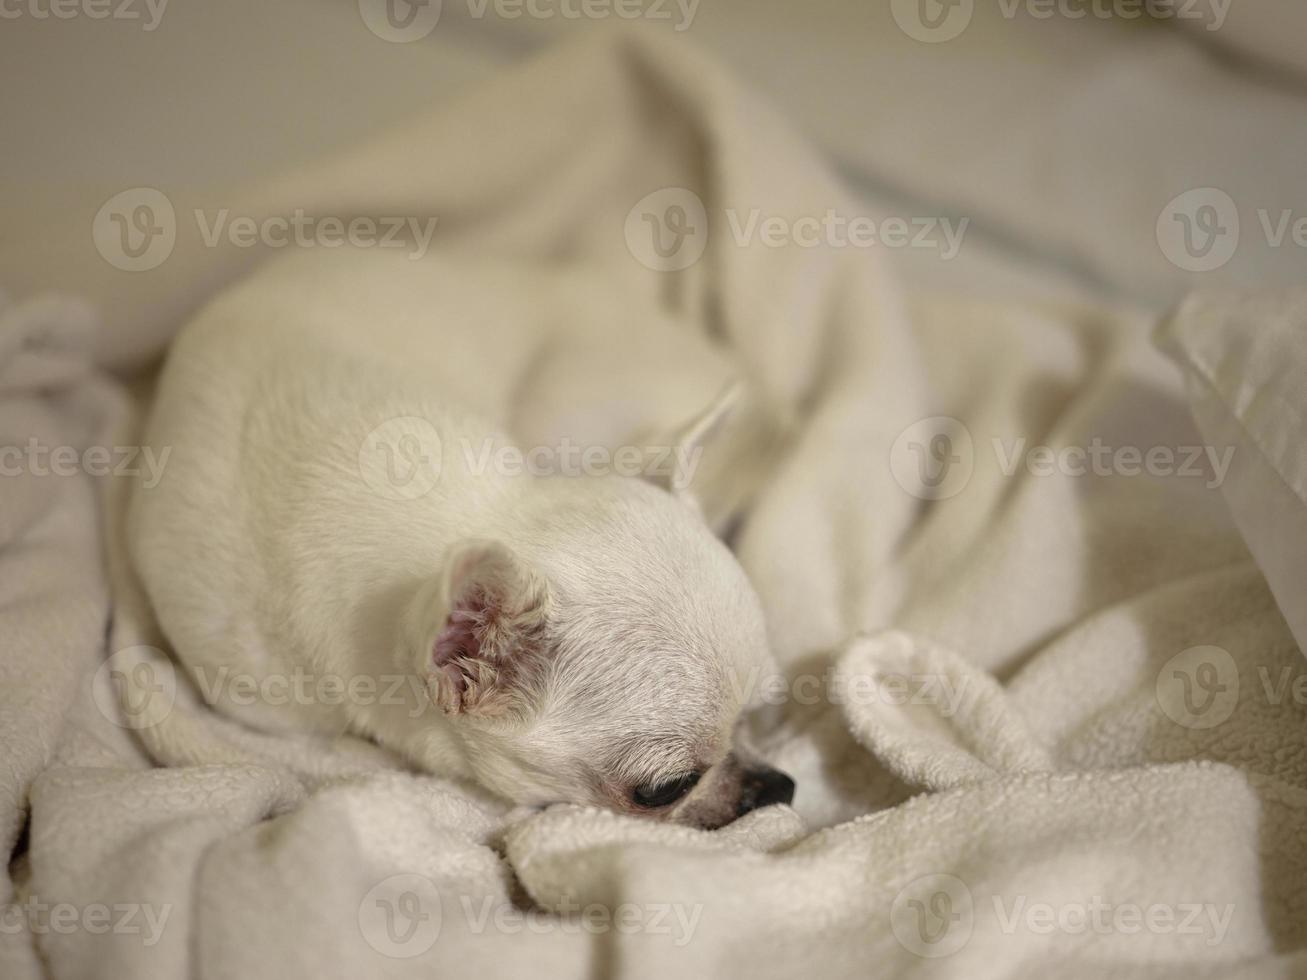 um chihuahua fofo debaixo do cobertor na cama sonhando bons sonhos. foto